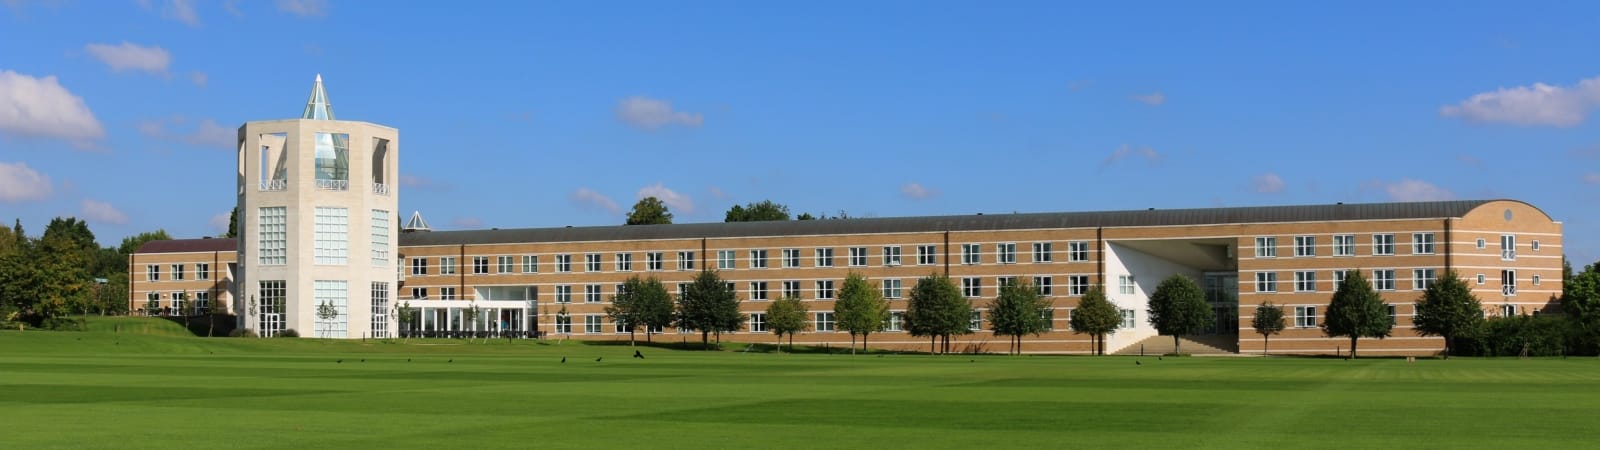 Moller institute Cambridge